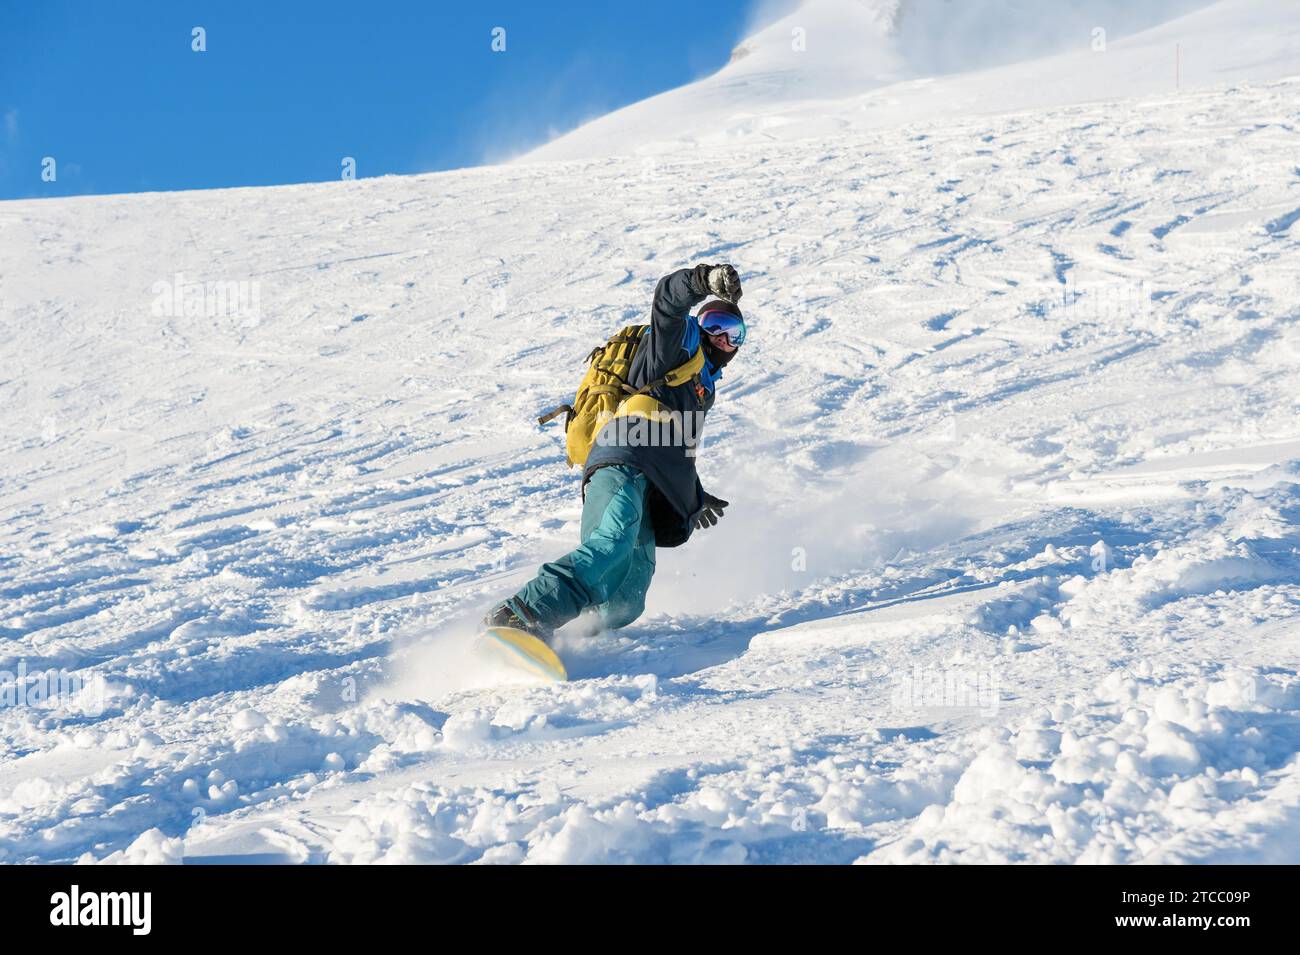 Ein Freeboard-Snowboarder in einer Skimaske und einem Rucksack läuft über die schneebedeckte Piste und hinterlässt einen Schneepulver am blauen Himmel Stockfoto